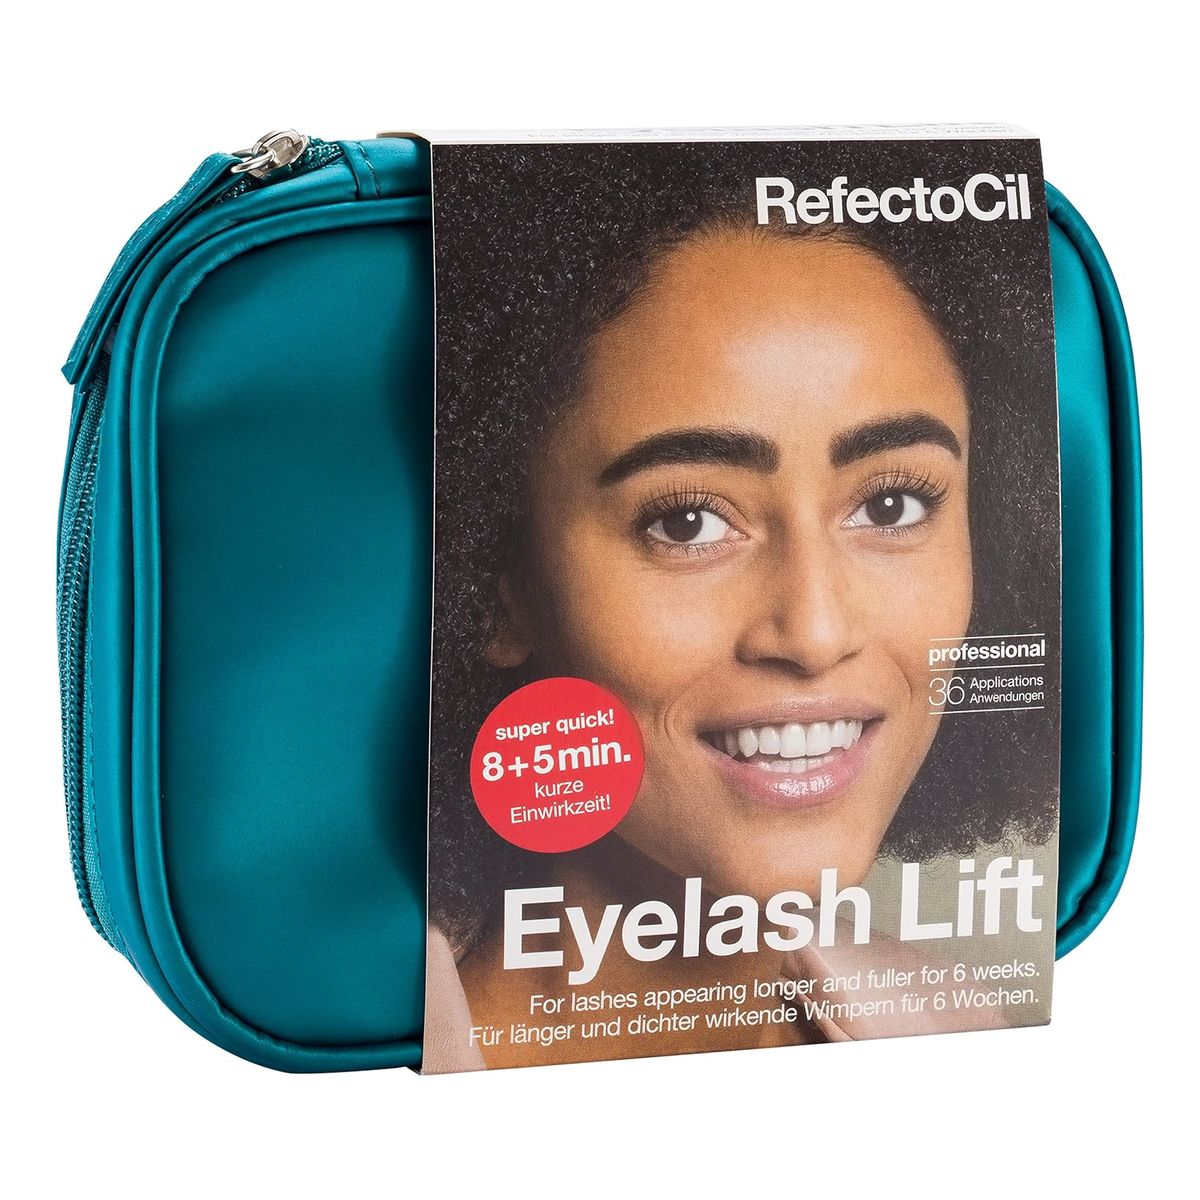 RefectoCil Eyelash Lift – Zestaw do trwałego liftingu rzęs (36 aplikacji) 3.5ml